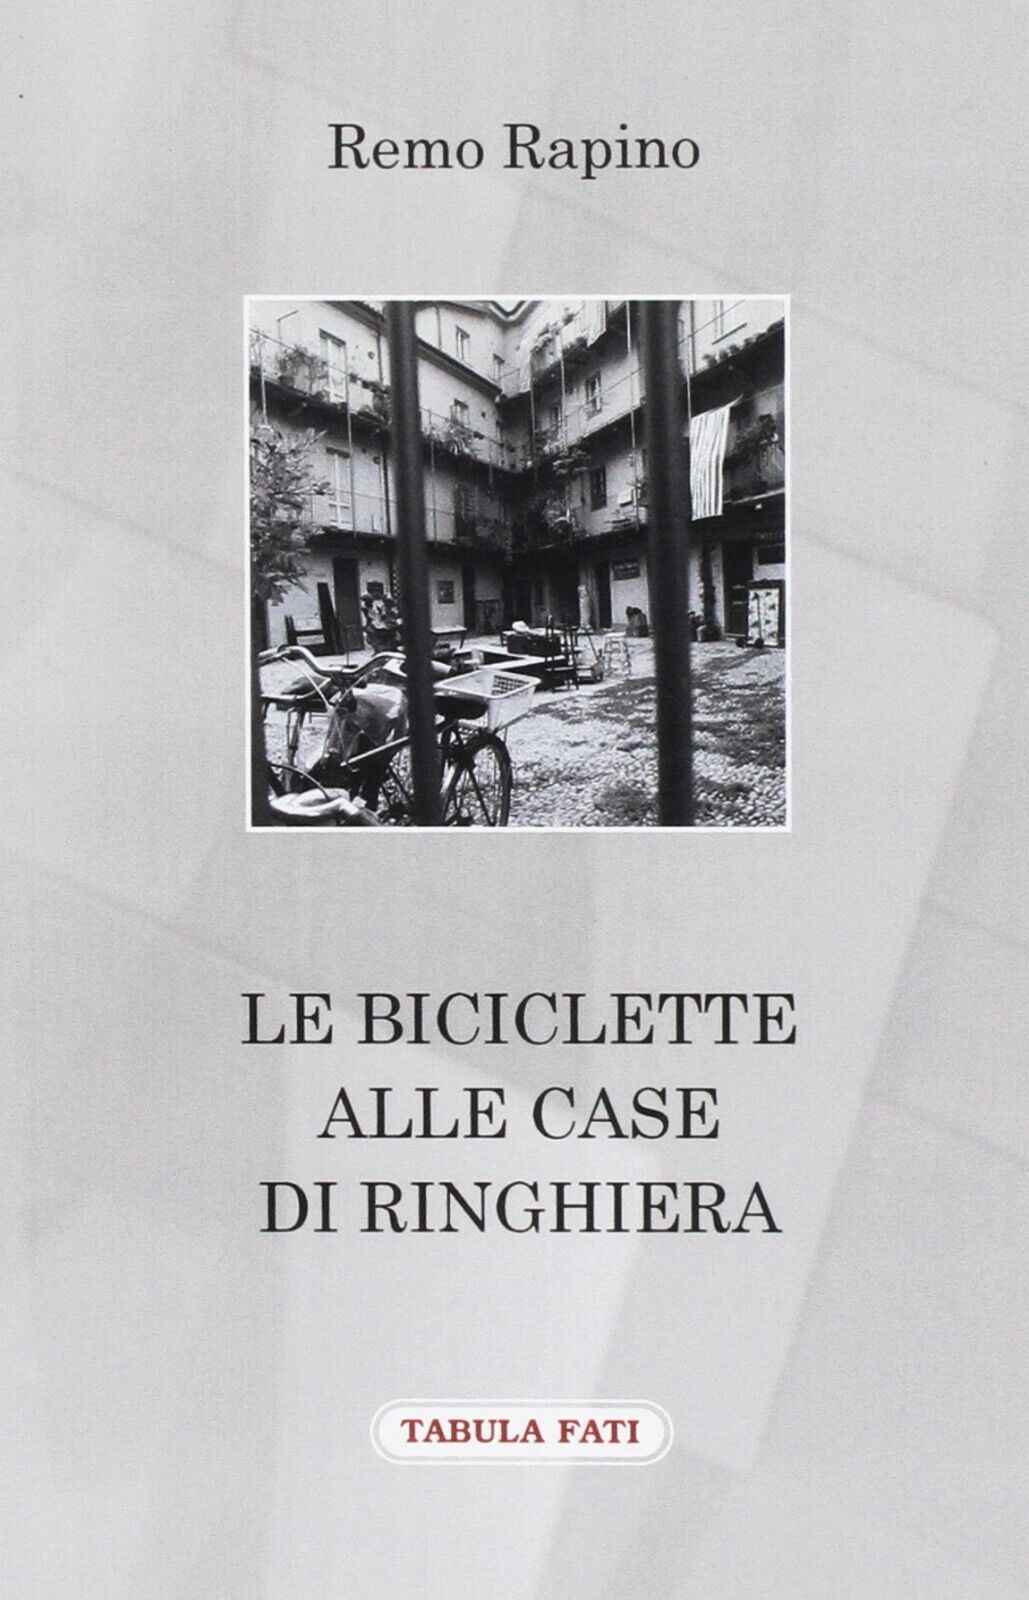 Le biciclette alle case di ringhiera di Remo Rapino, 2016, Tabula Fati